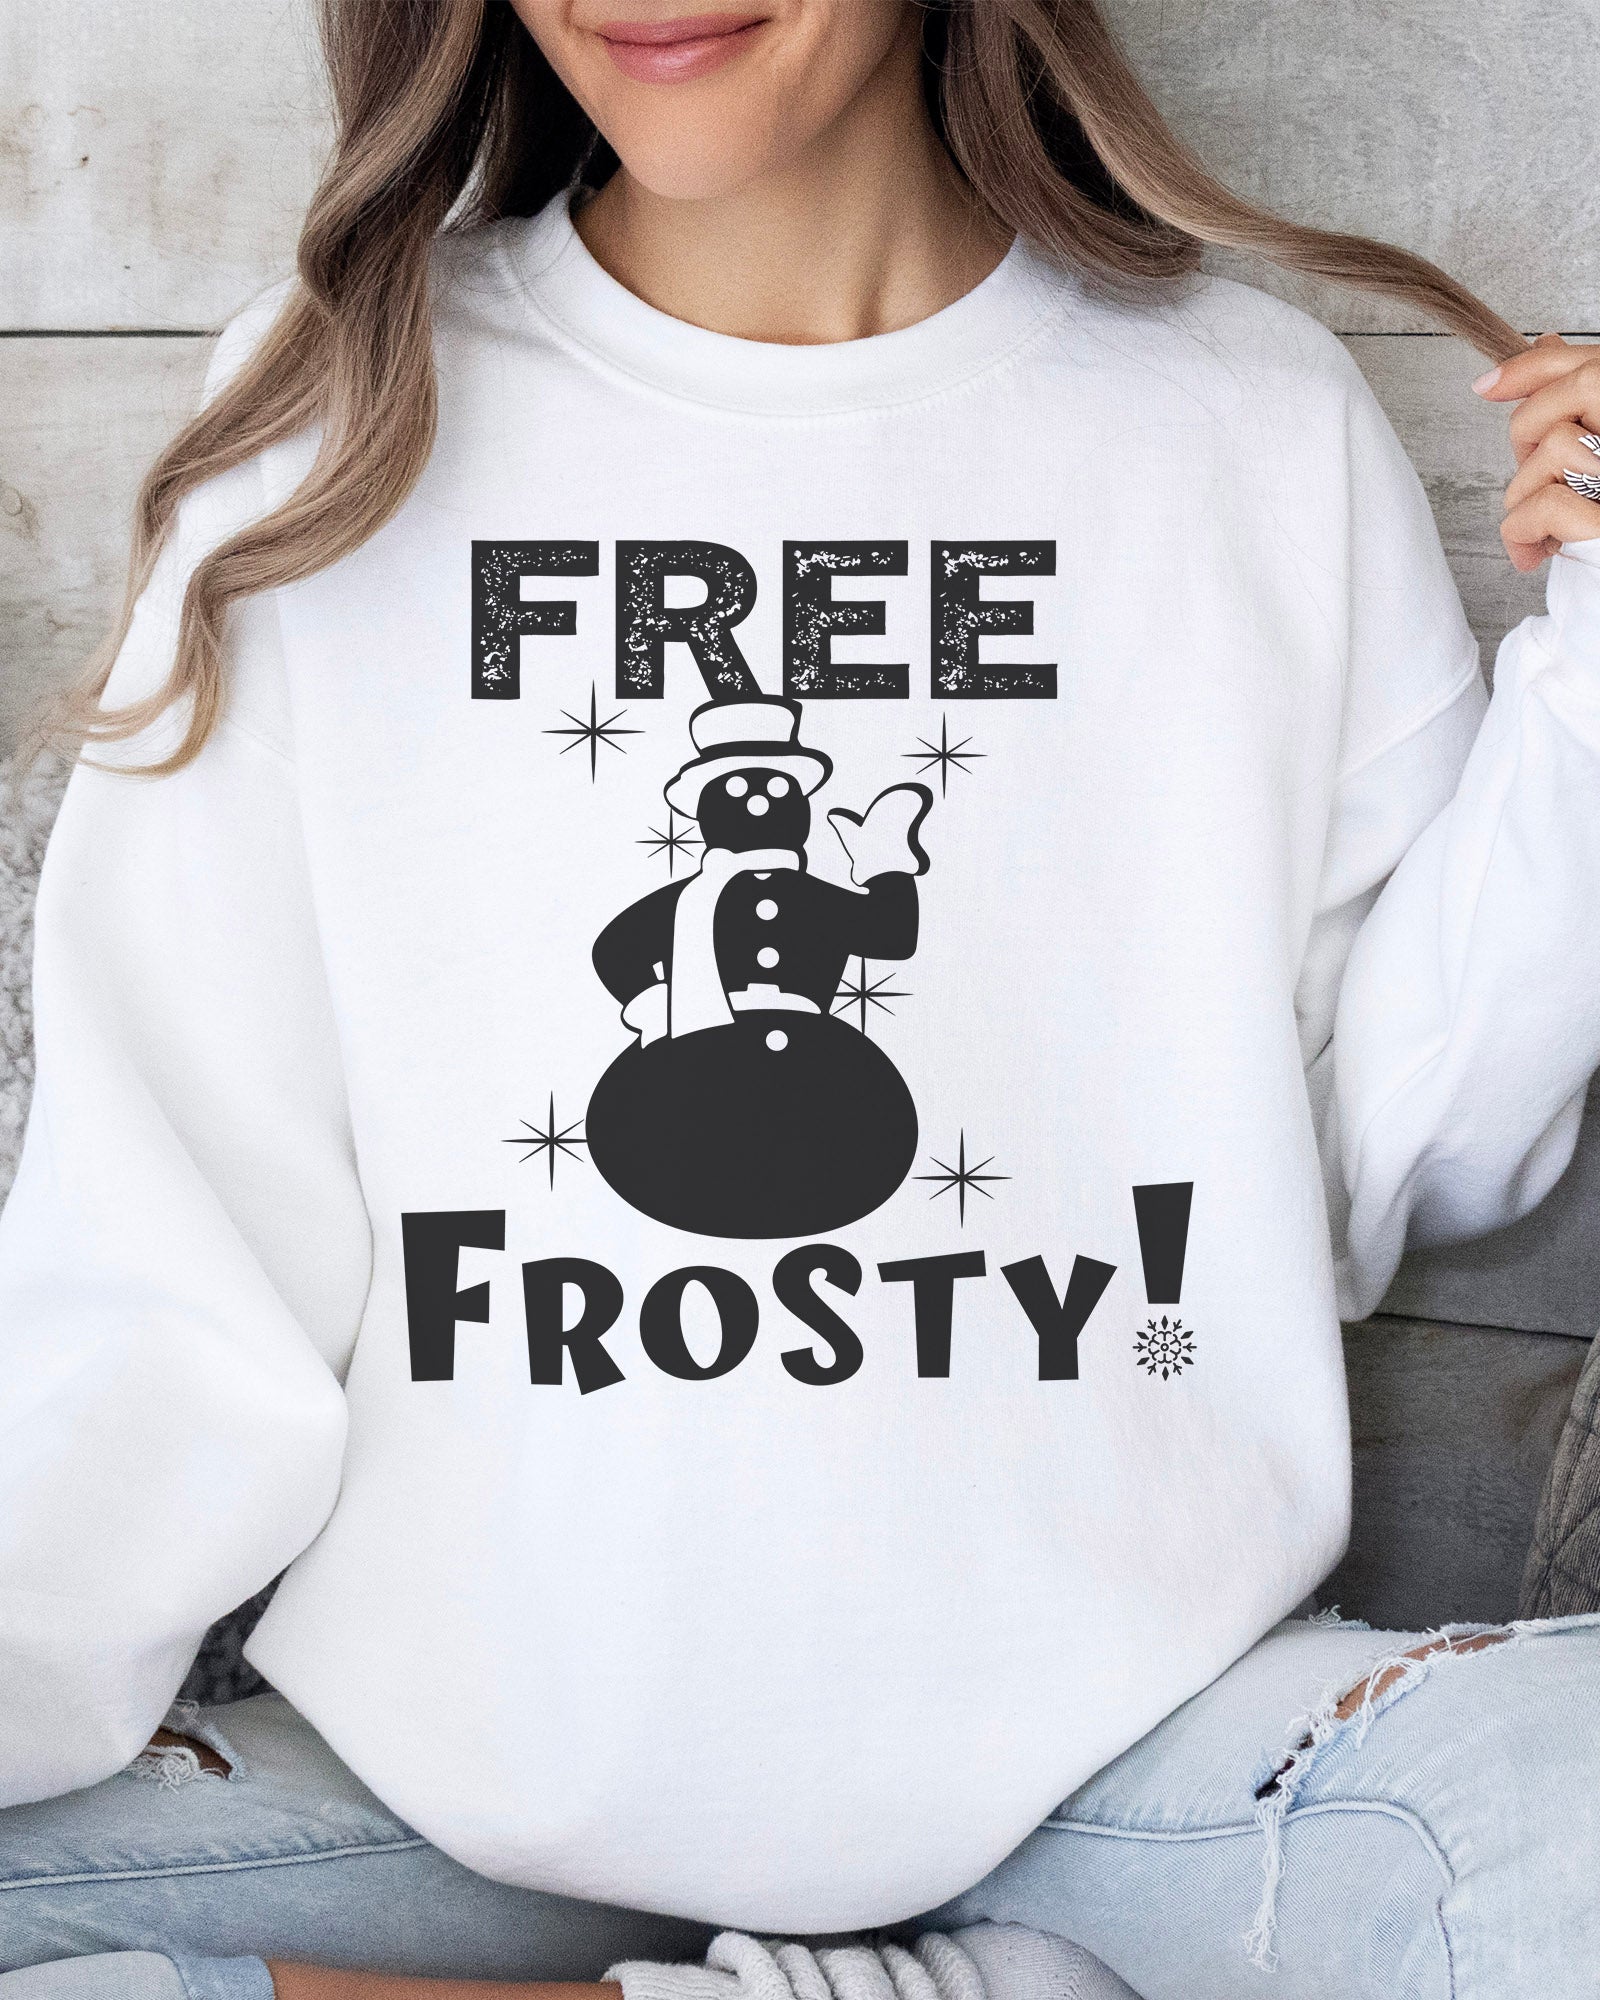 Kranks - Frosty Sweatshirt